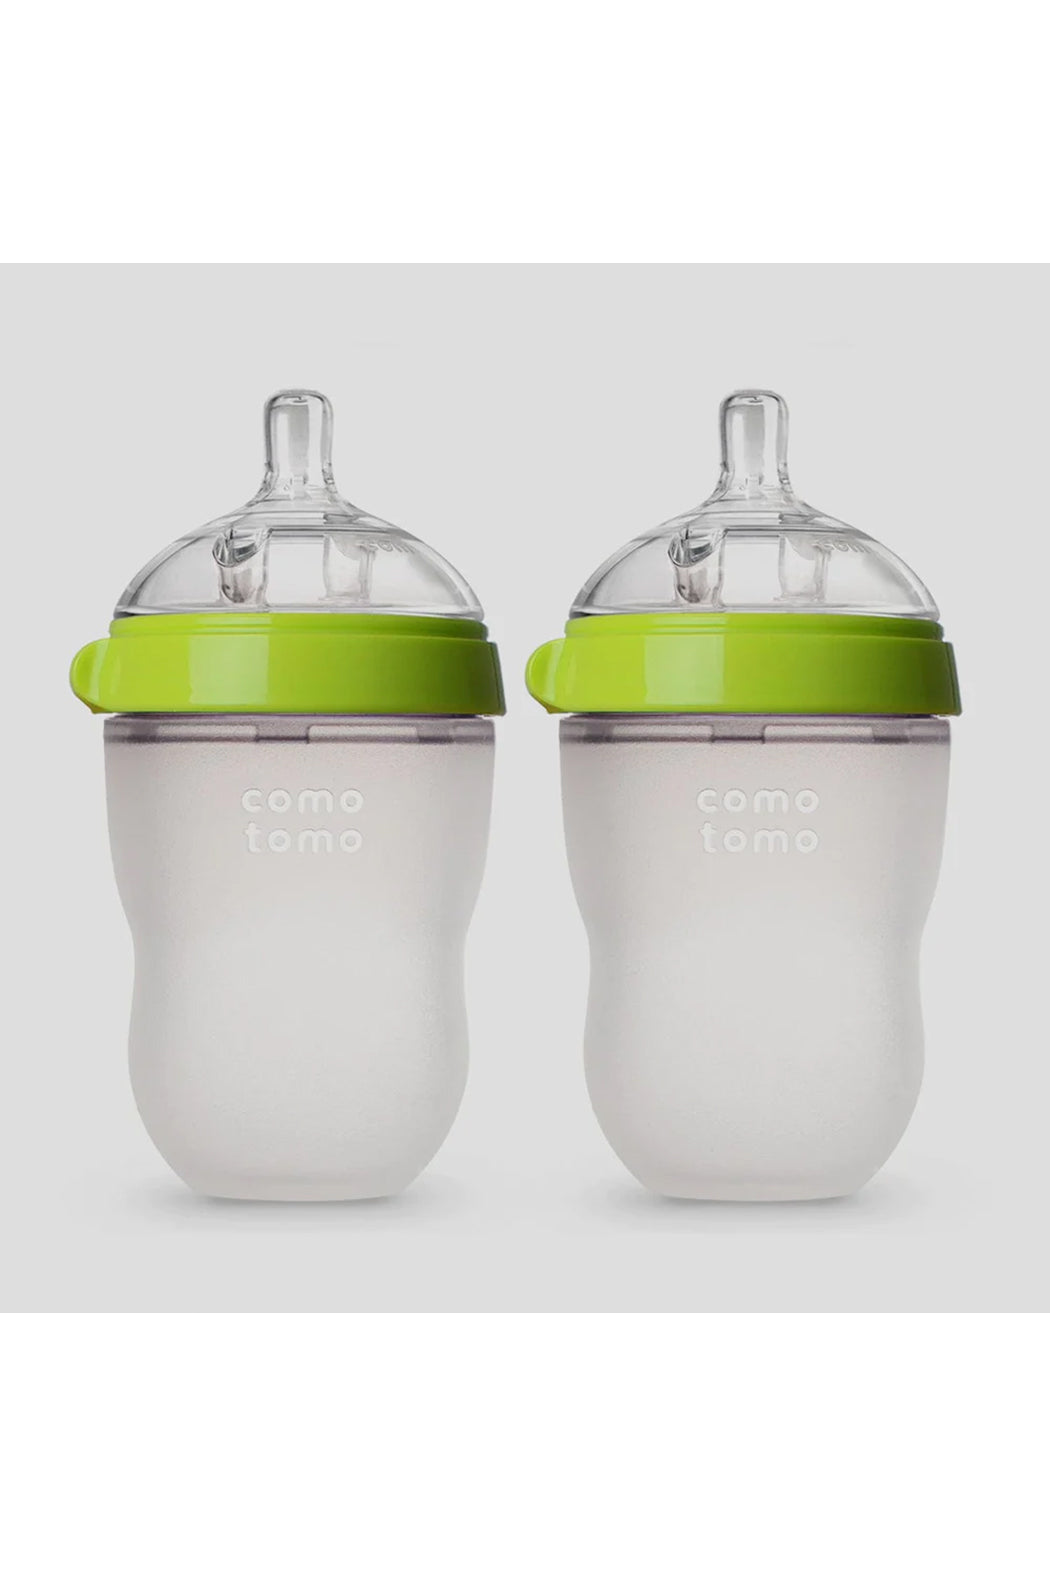 Comotomo Baby Bottle Double Pack - 8 oz - Green